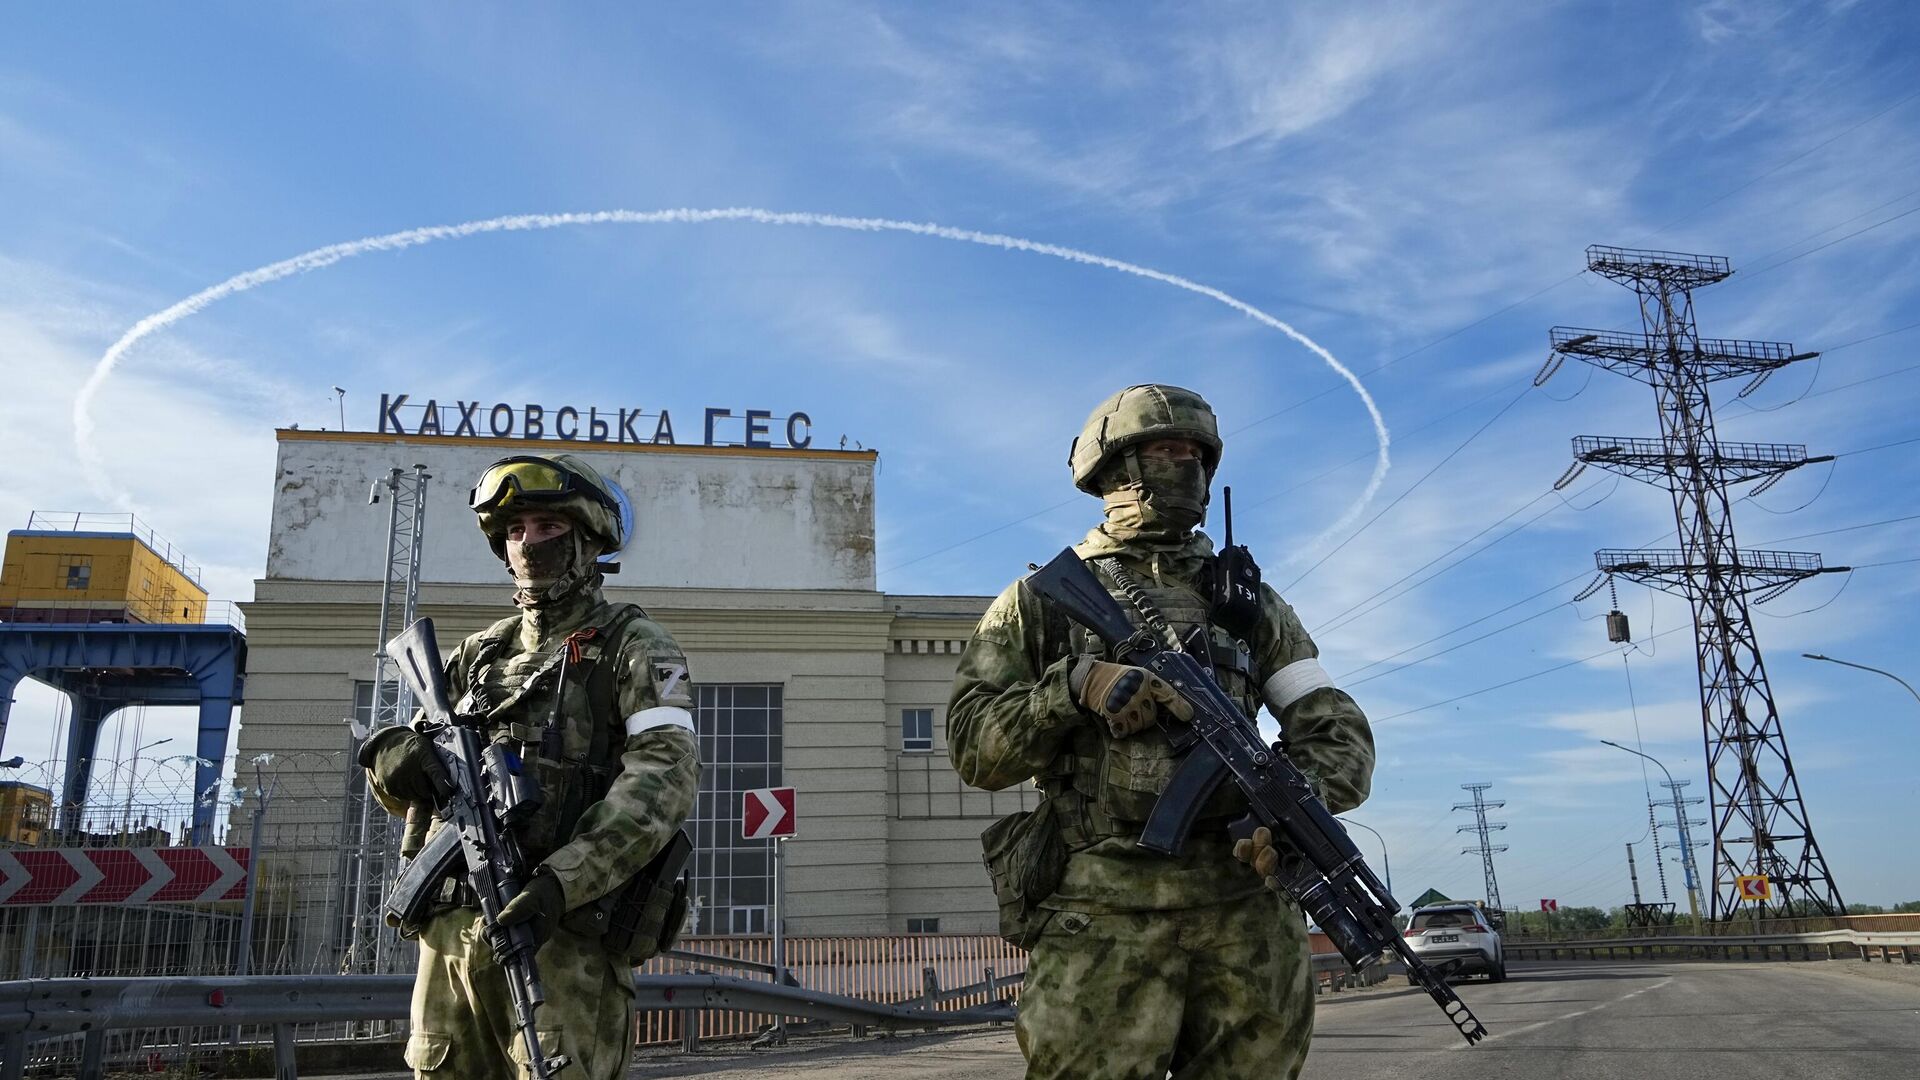 Российские войска охраняют территорию Каховской ГЭС, расположенной в Херсонской области. Пятница, 20 мая, 2022 год - ИноСМИ, 1920, 07.06.2023